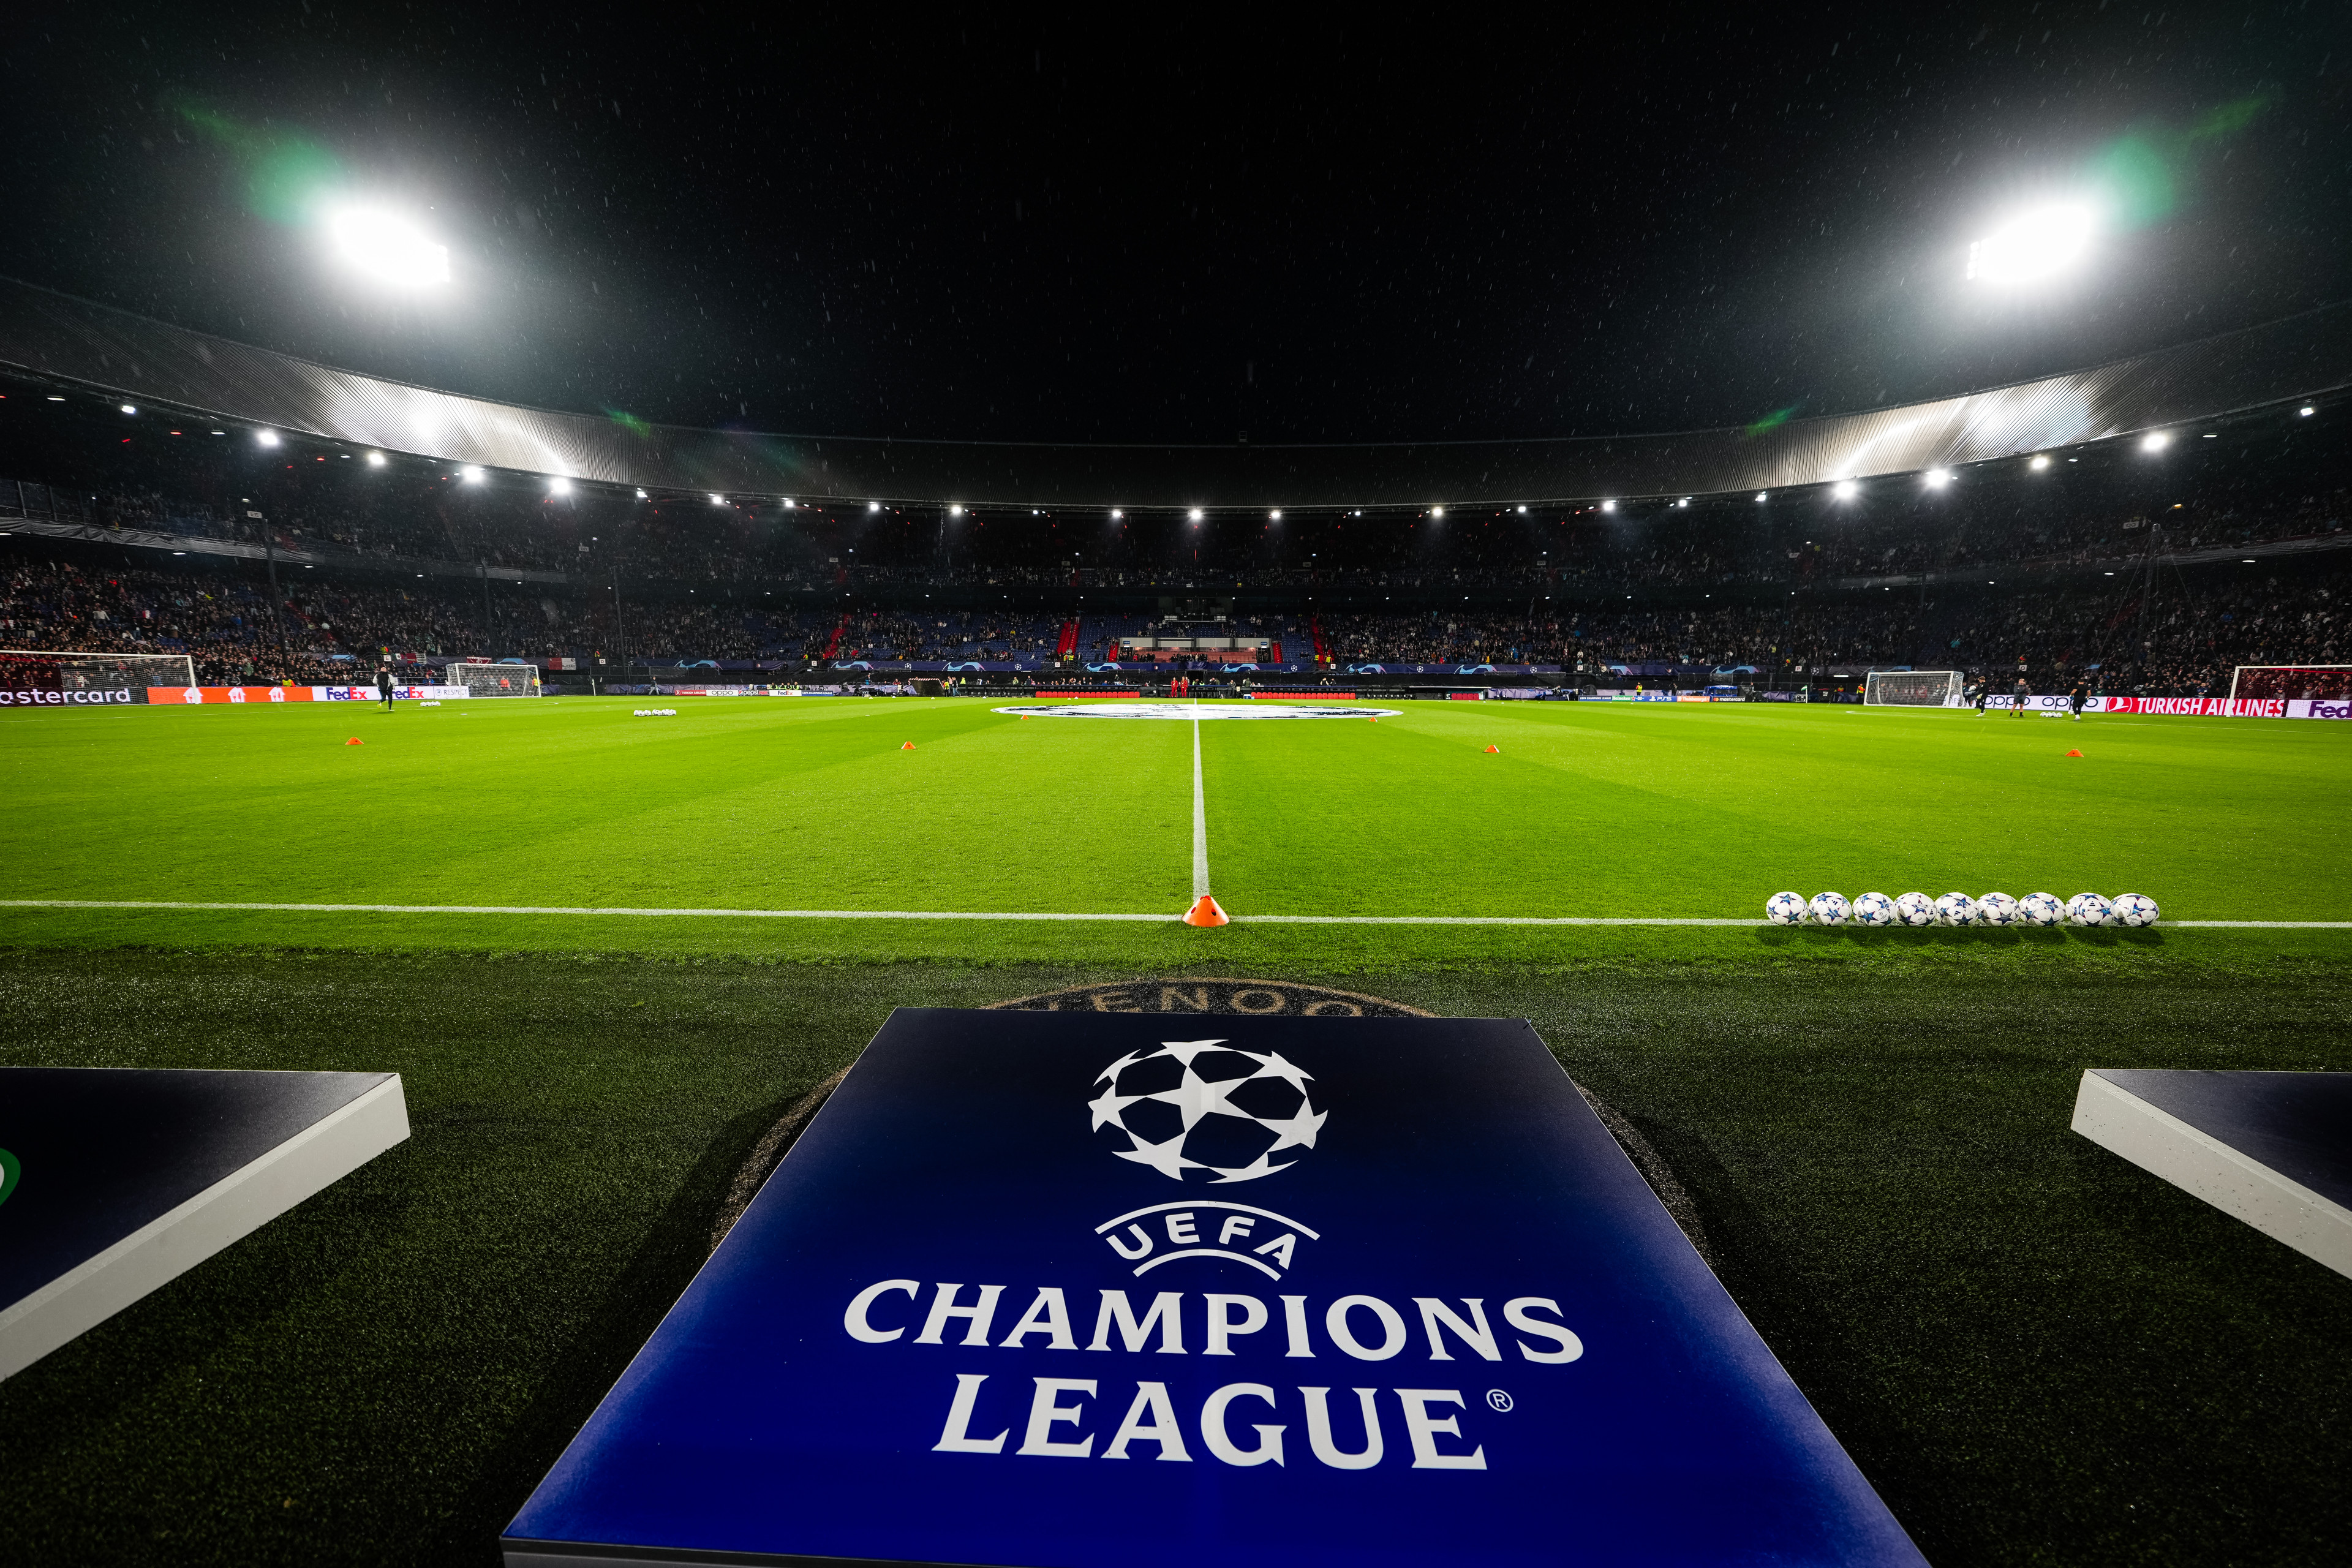 UEFA Champions League • Wie kan Feyenoord potentieel loten?